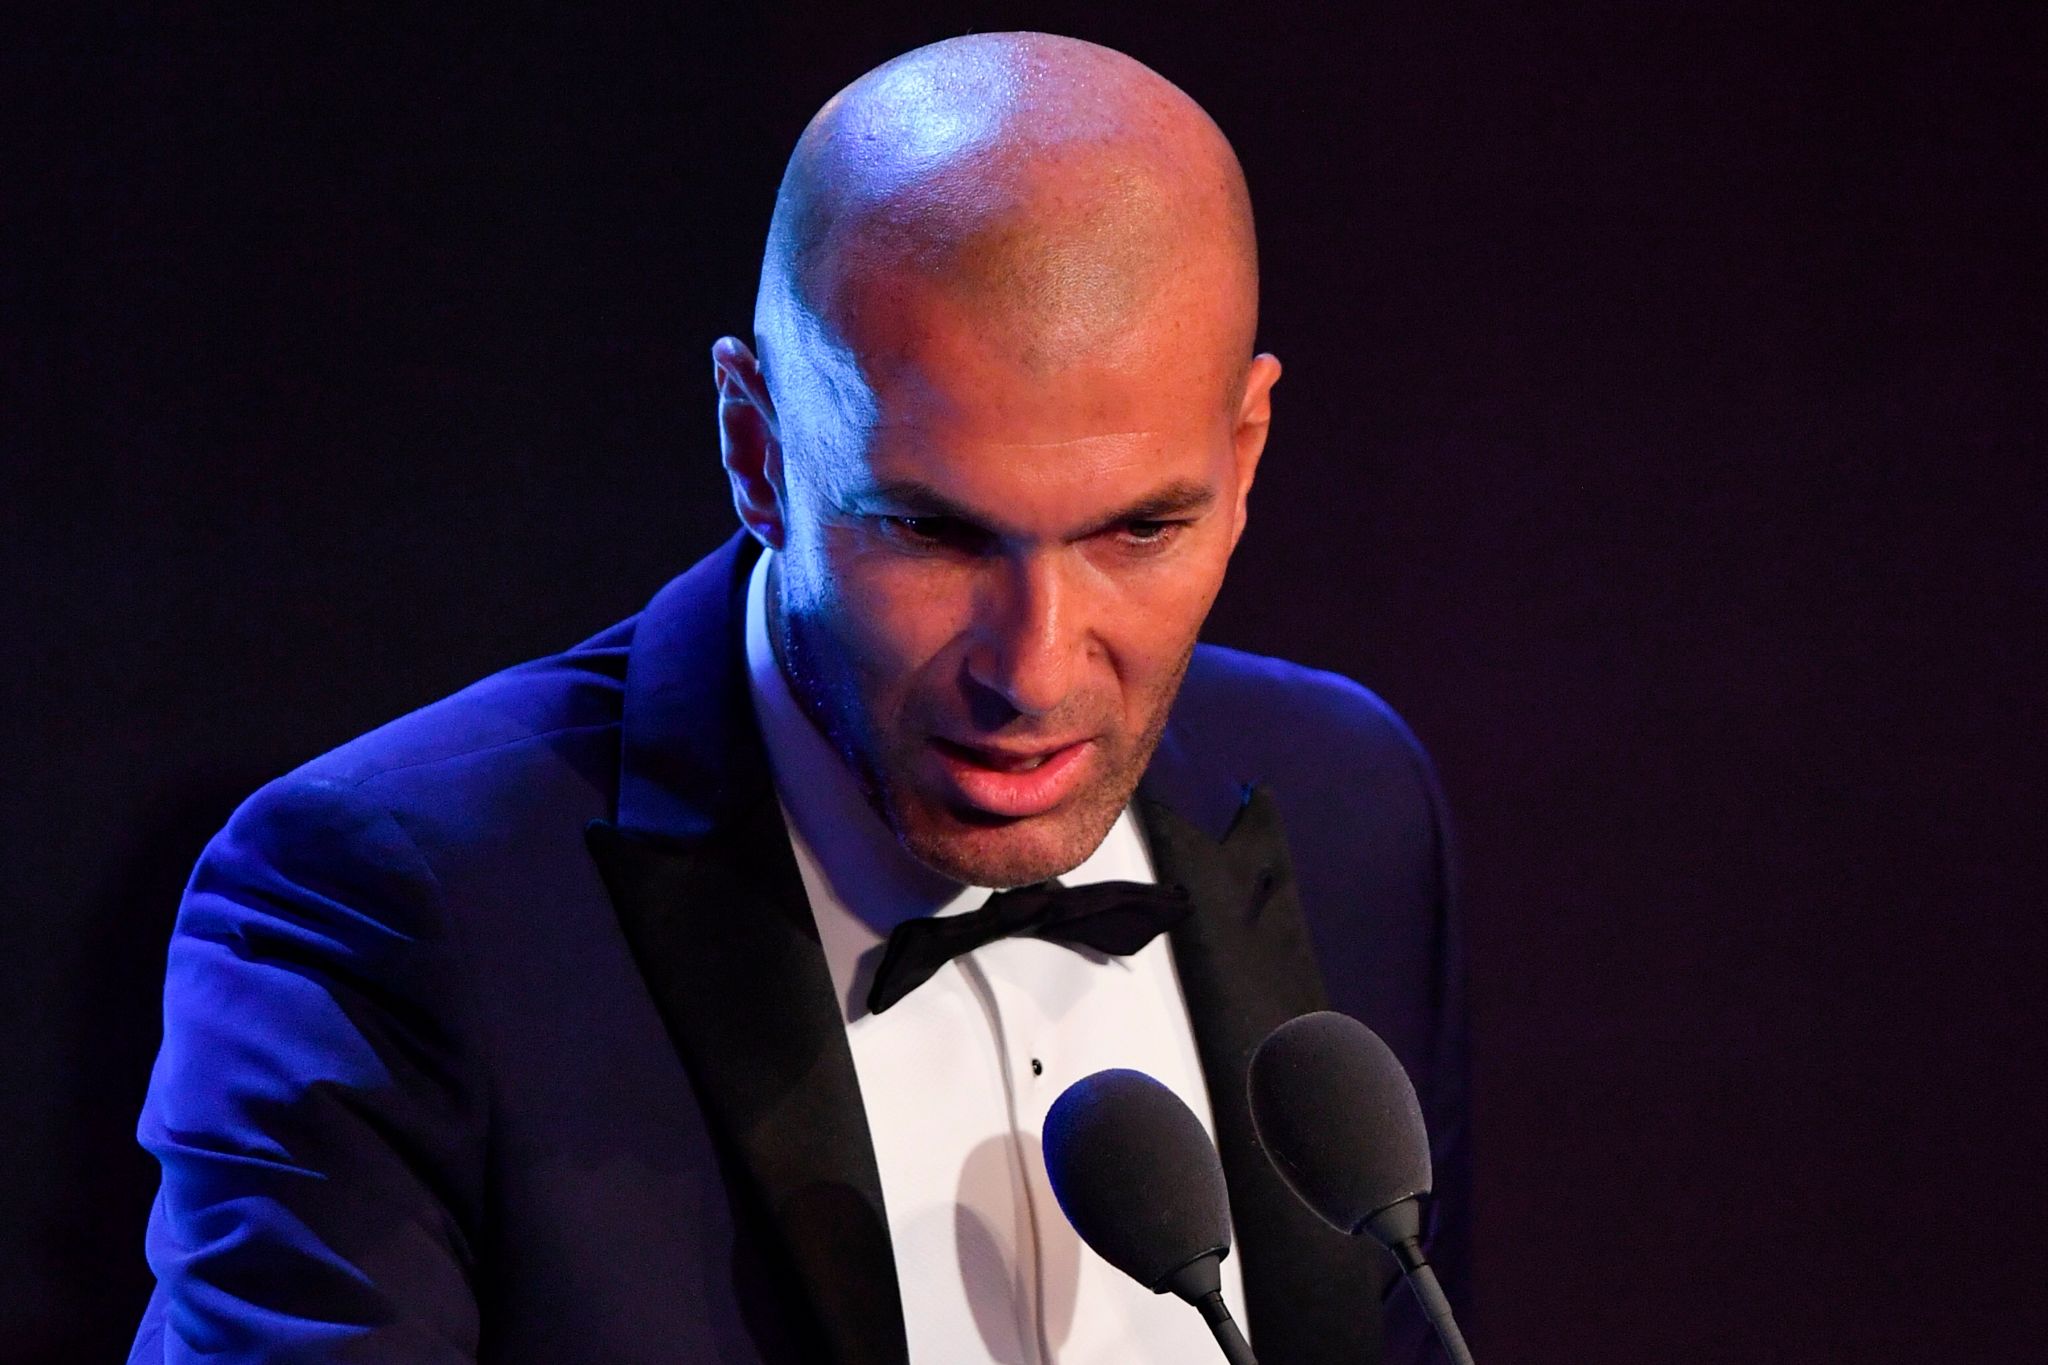 Le joueur du PSG que Zidane vendra s’il devient manager a été révélé